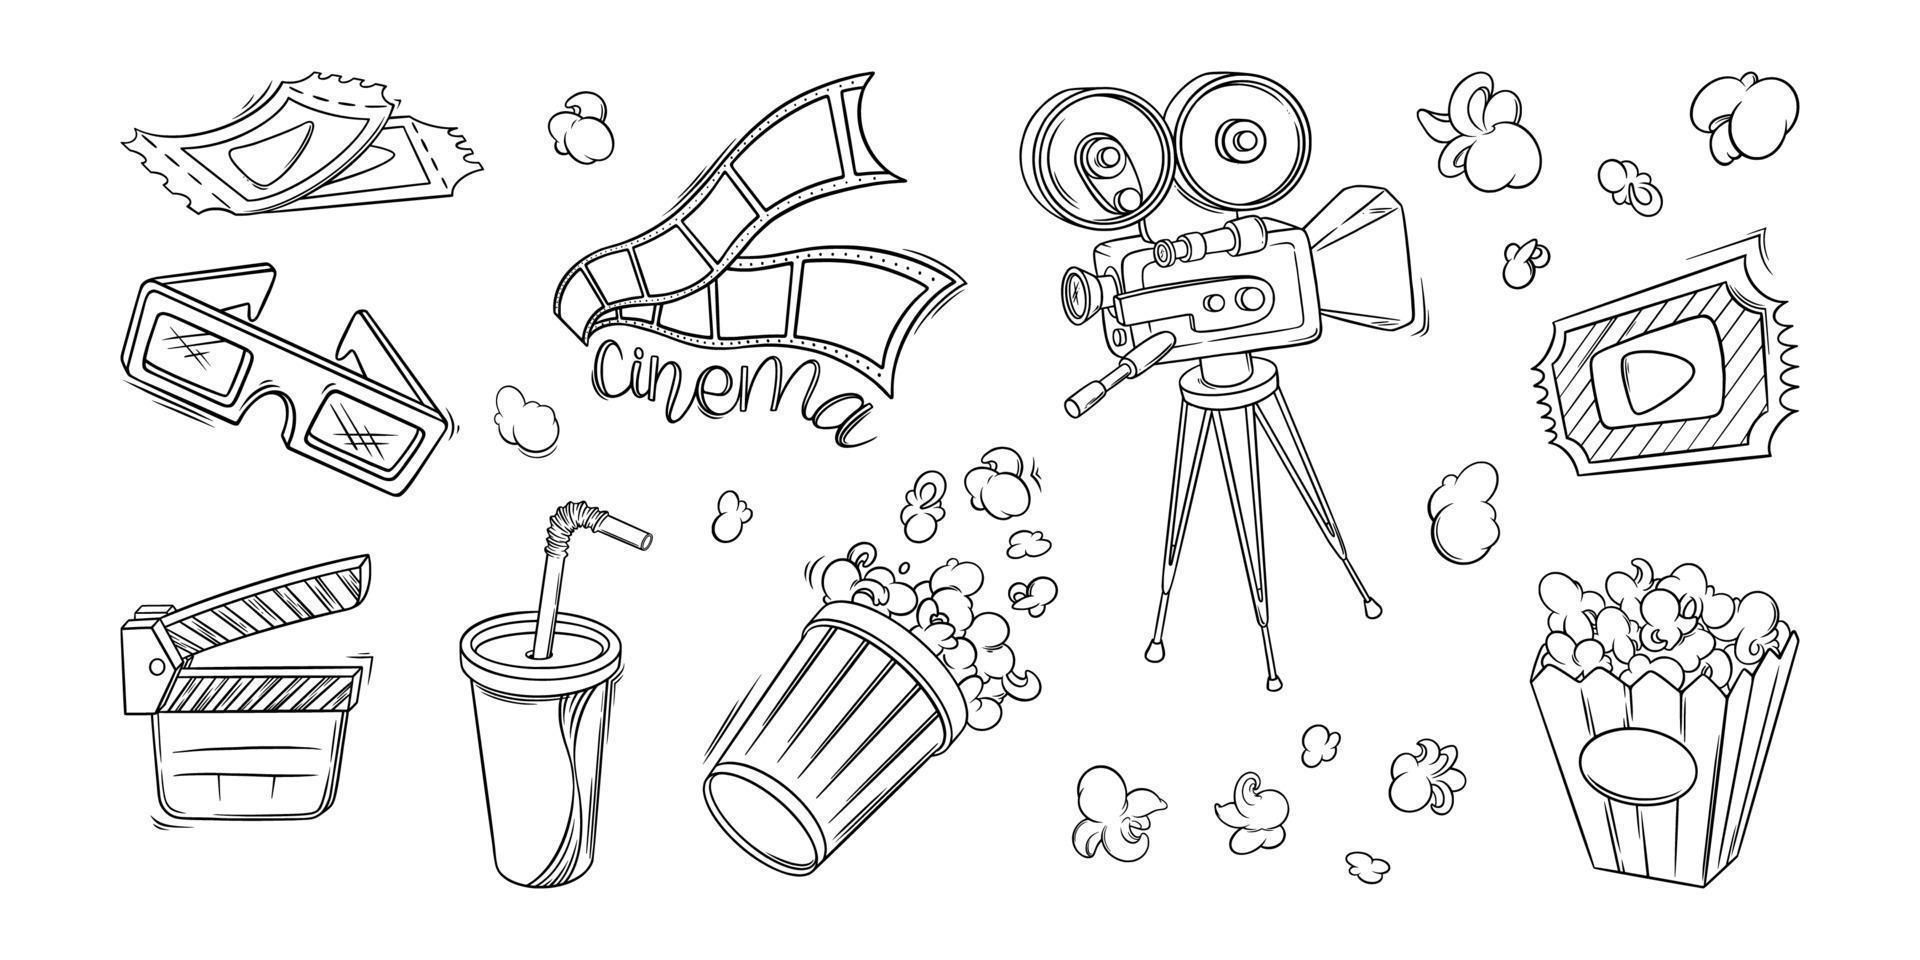 bioscoop film, camera, popcorn en andere voorwerpen. bioscoop reeks in tekening stijl. vector illustratie